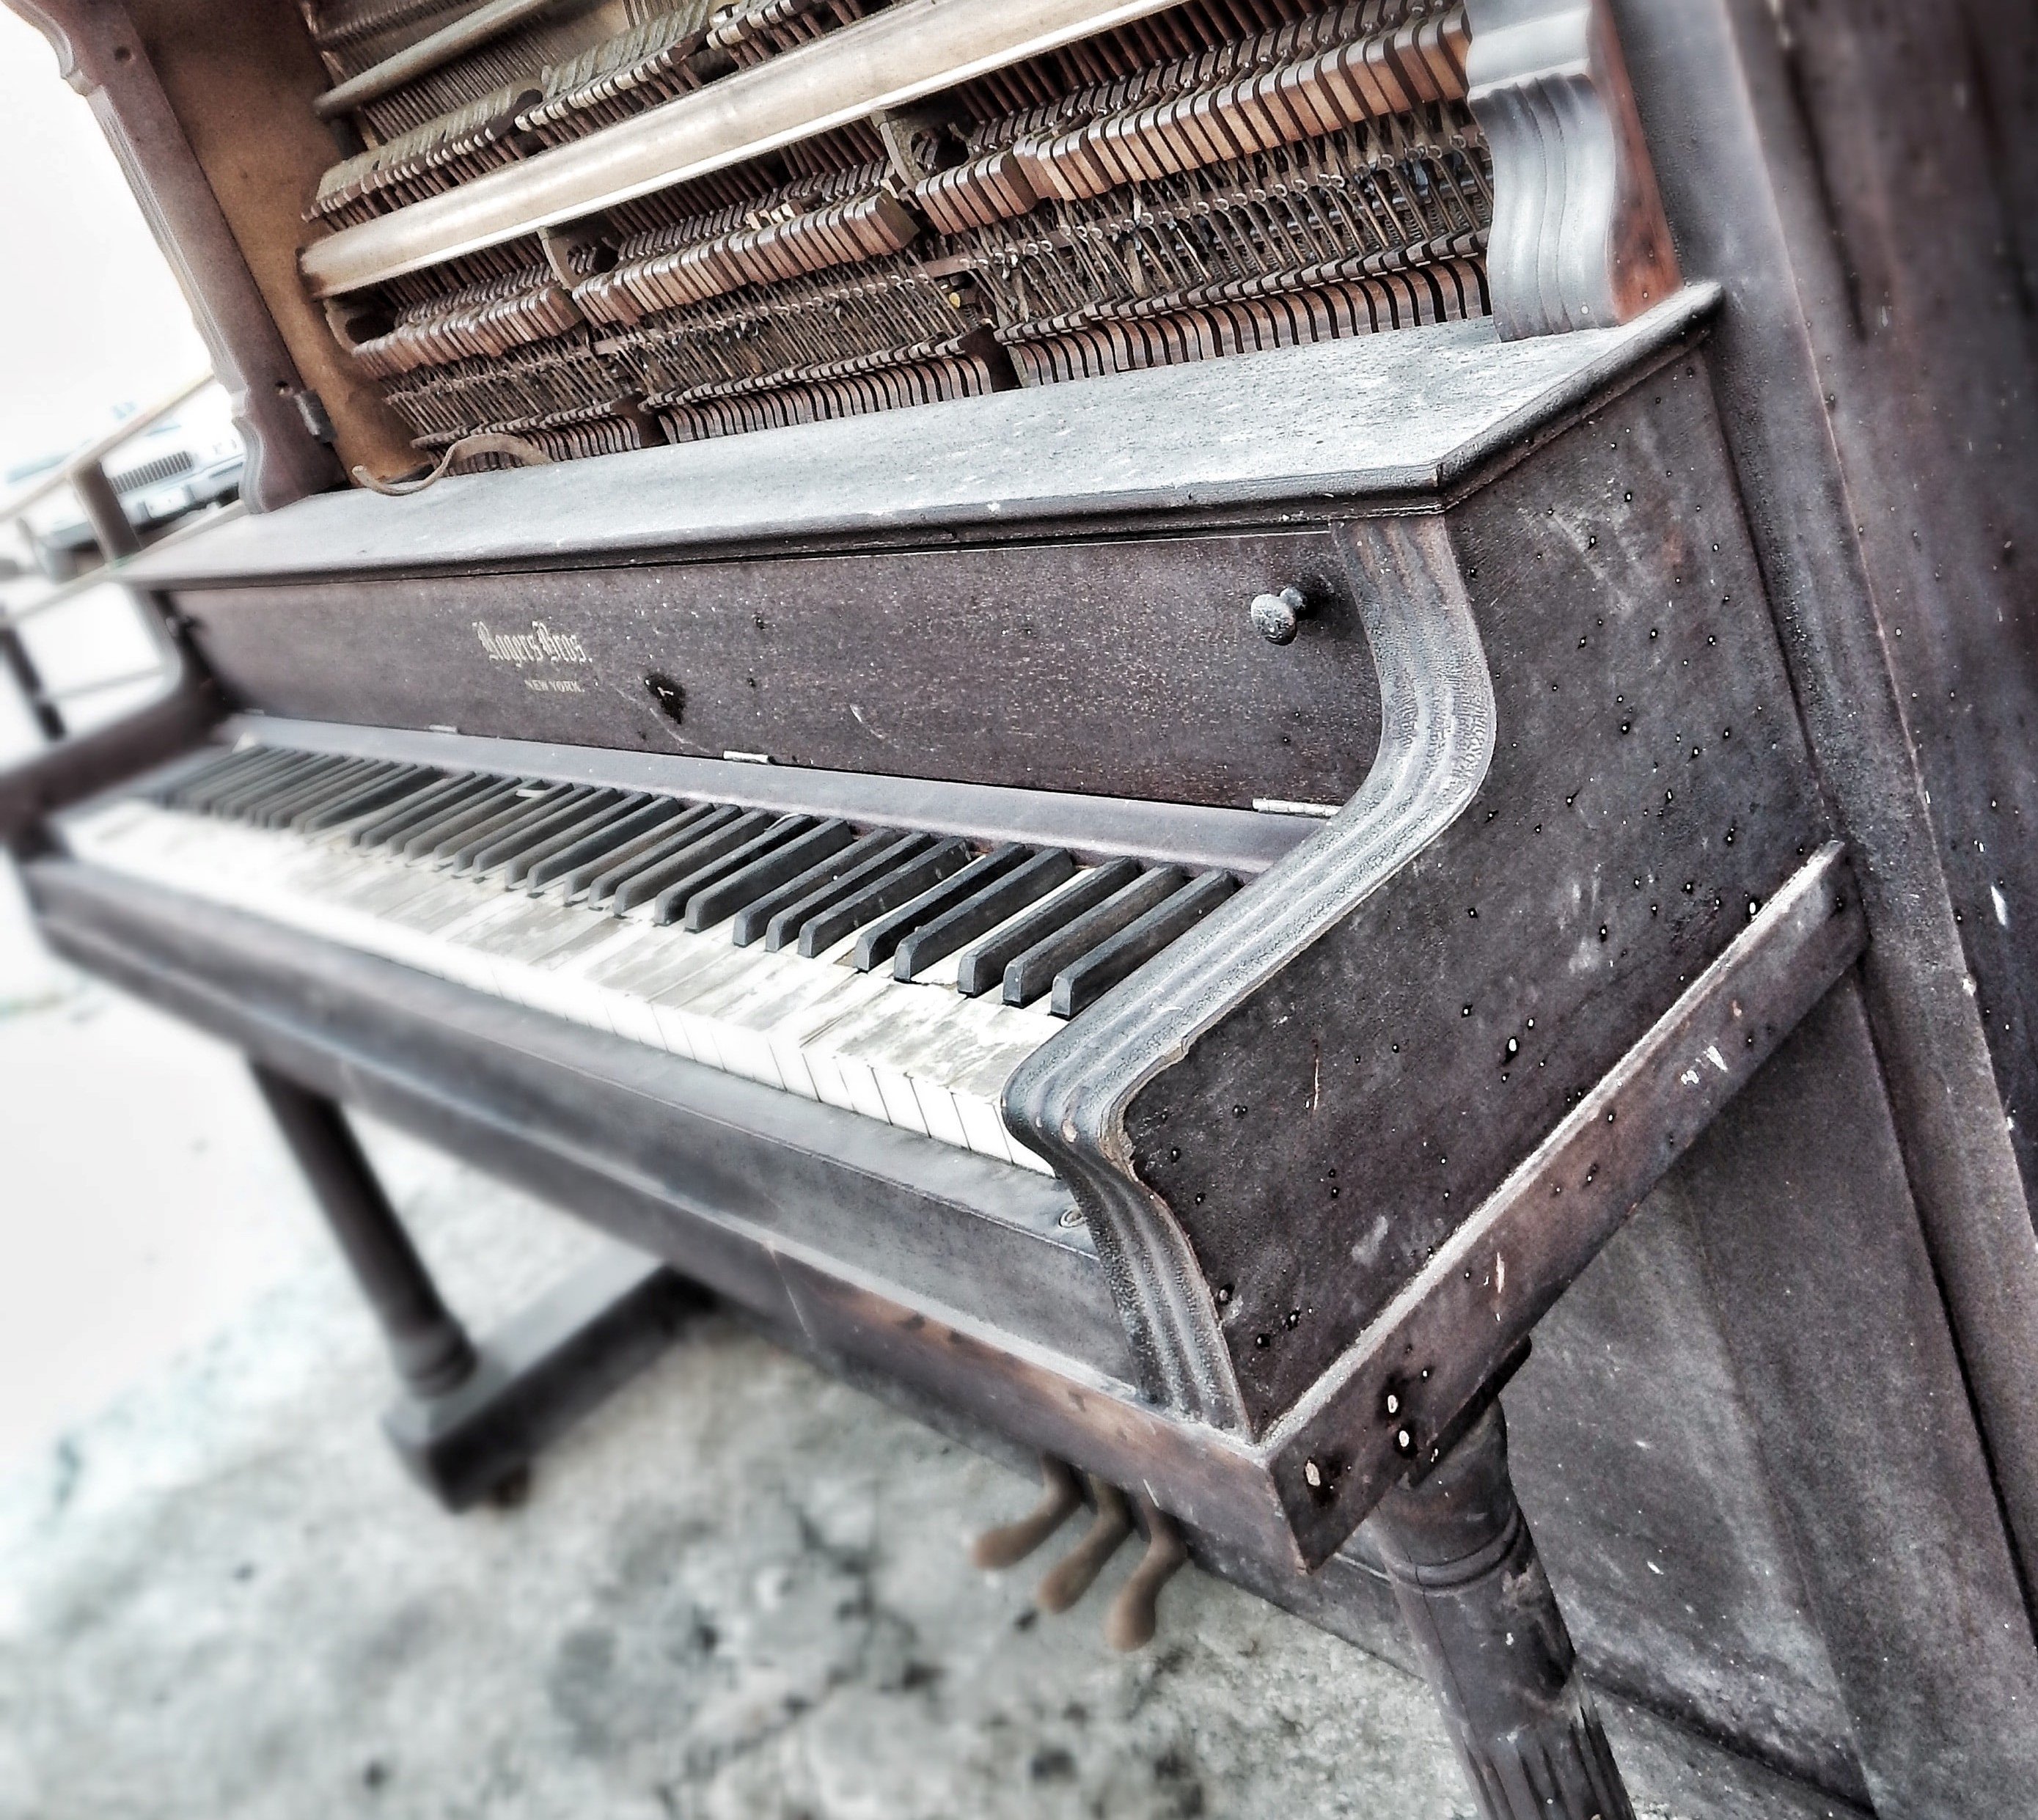 Kurz darauf stellte Adele das Klavier in ihr Haus, aber ihre Eltern waren wütend auf sie. | Quelle: Unsplash